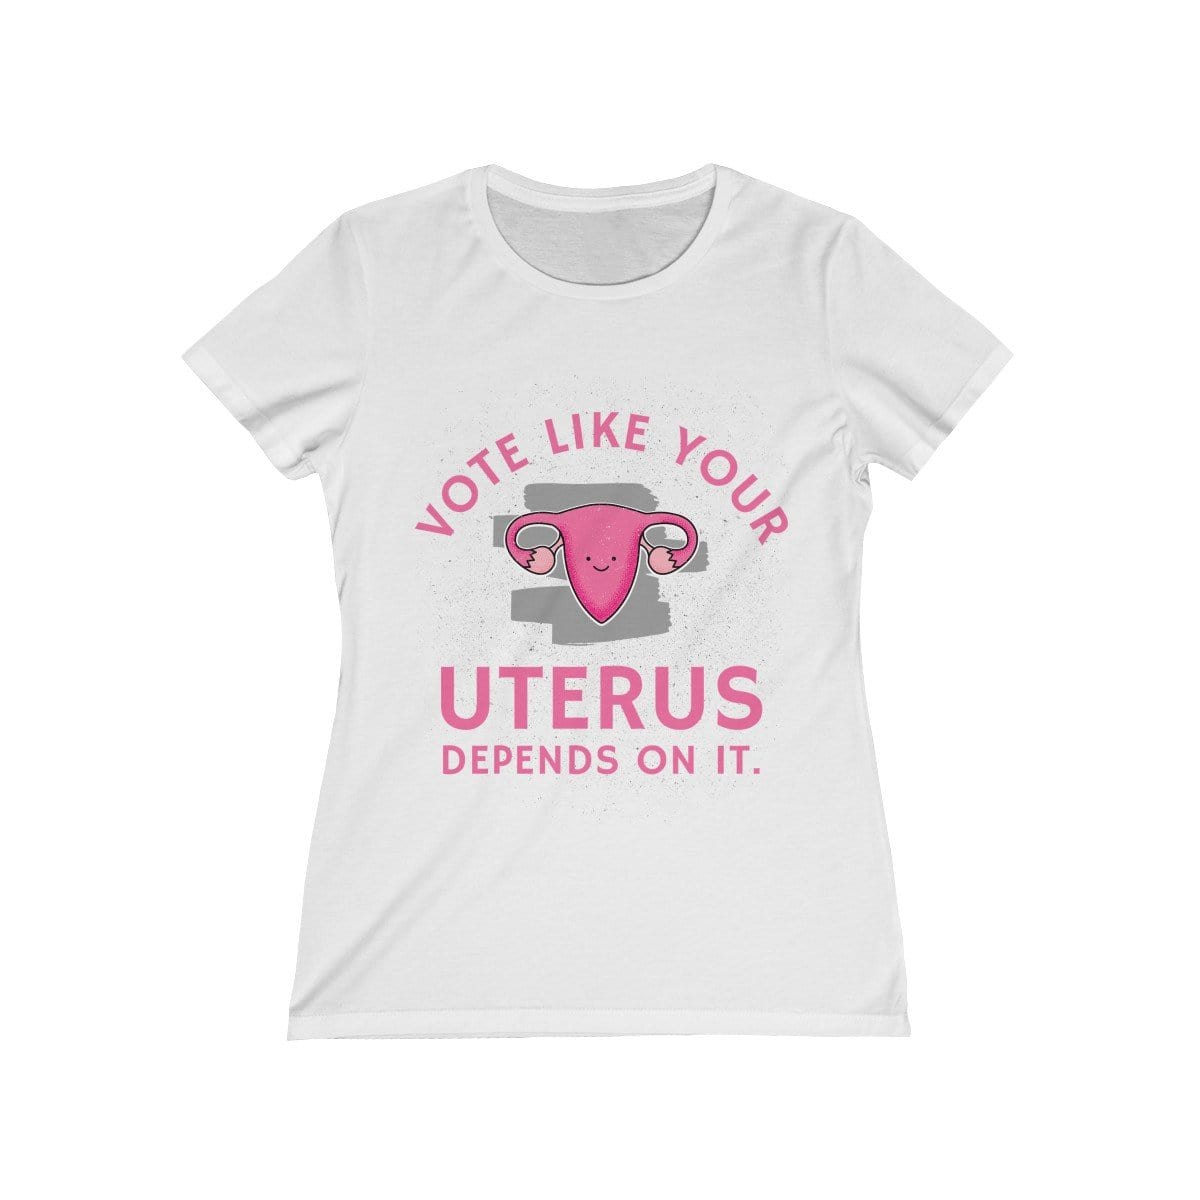 "Vote Like Your Uterus Depends On It" Women's Tee - True Blue Gear